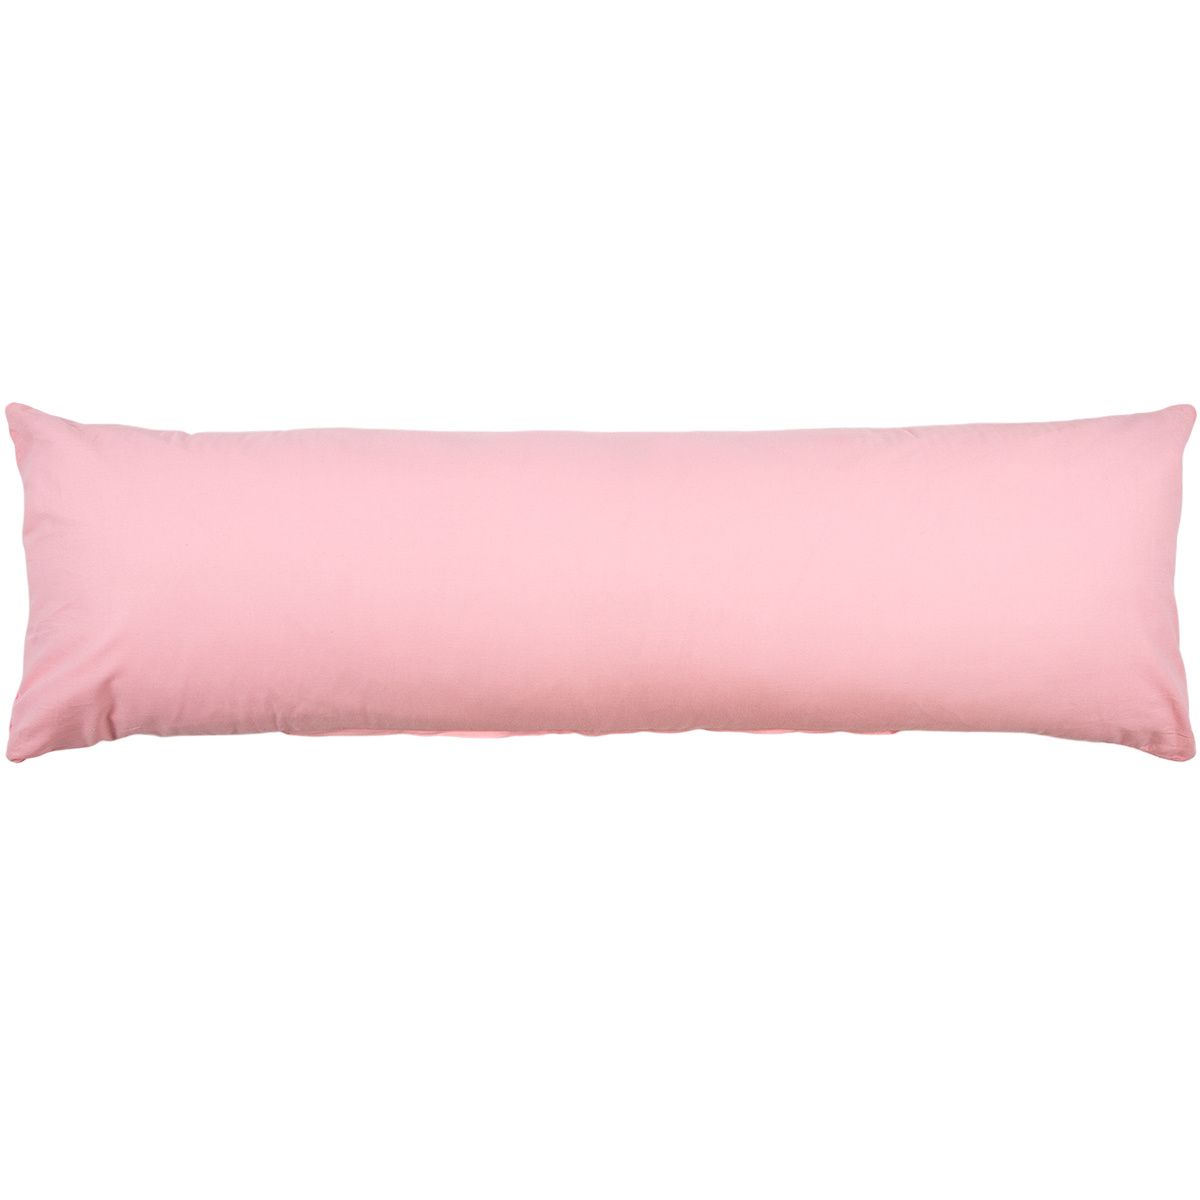 Home Elements Růžový povlak na relaxační polštář Náhradní manžel, 55 x 180 cm, II. jakost - 4home.cz